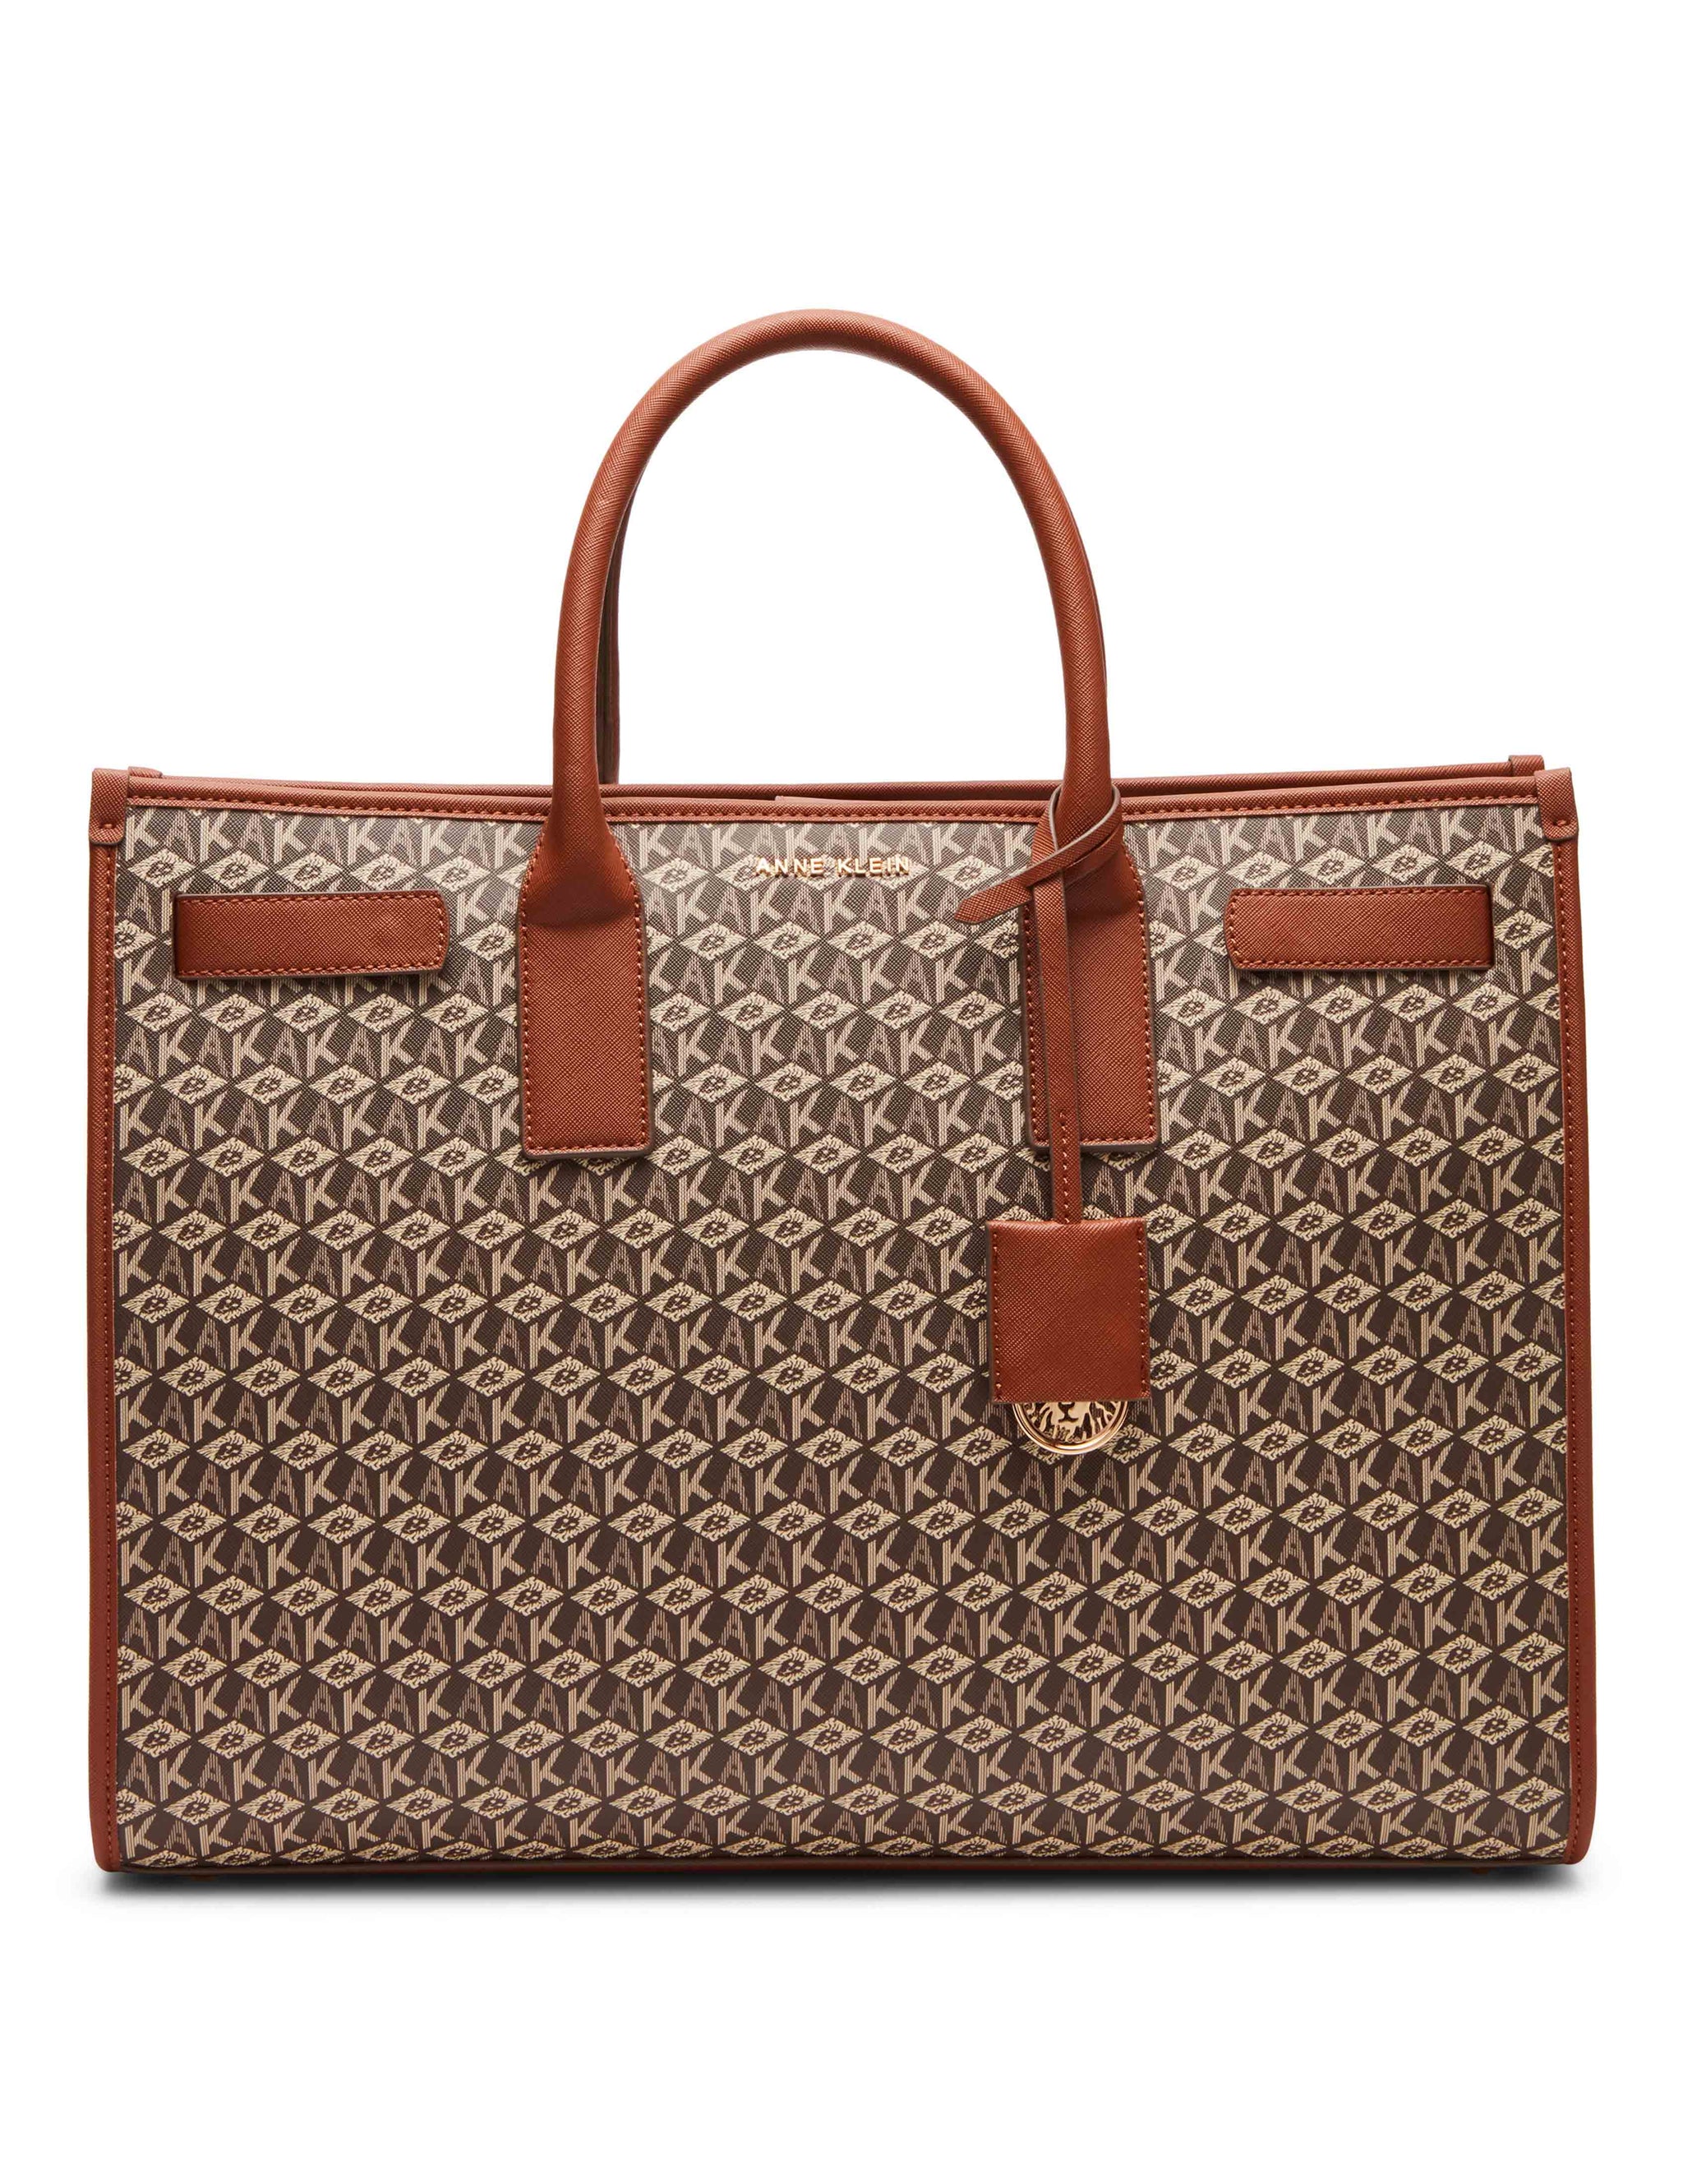  Calvin Klein: Handbags + Bags